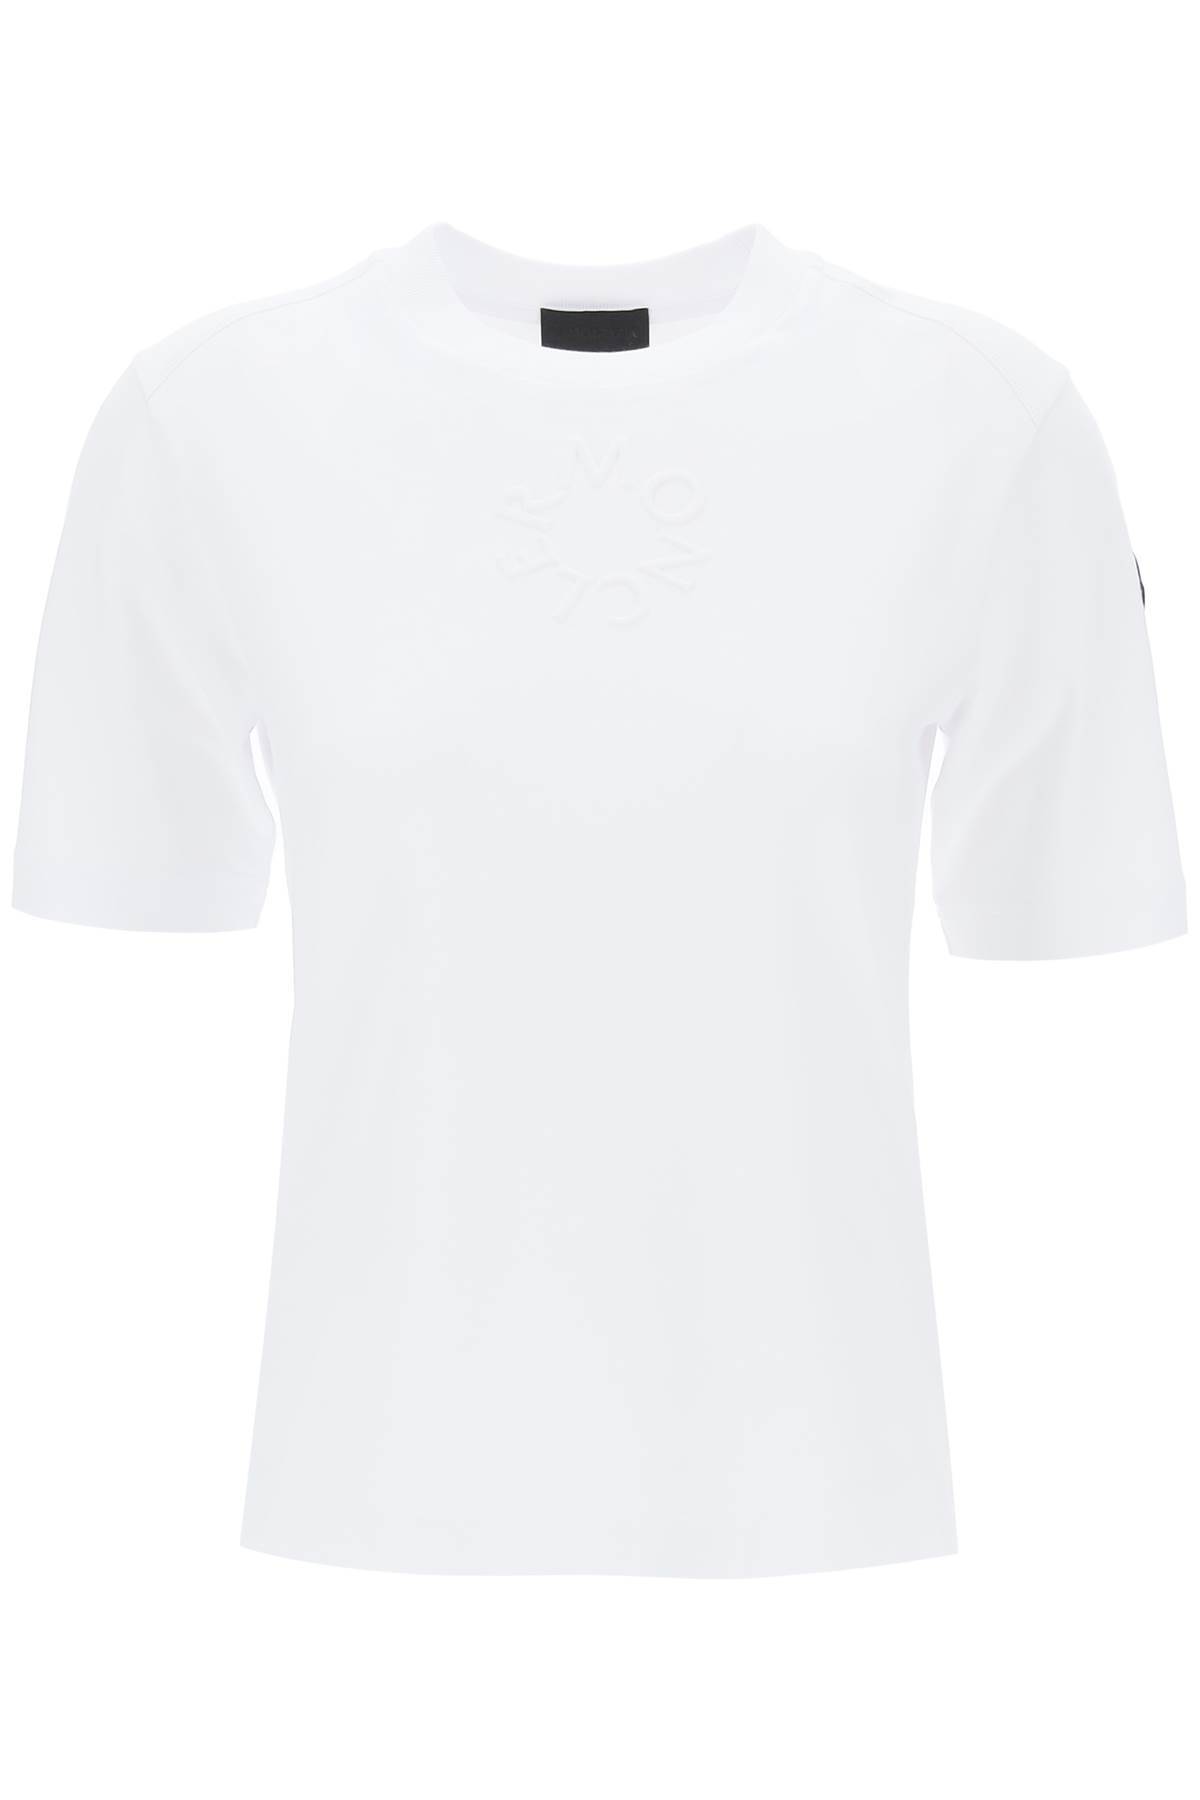 Moncler MONCLER embossed logo t-shirt